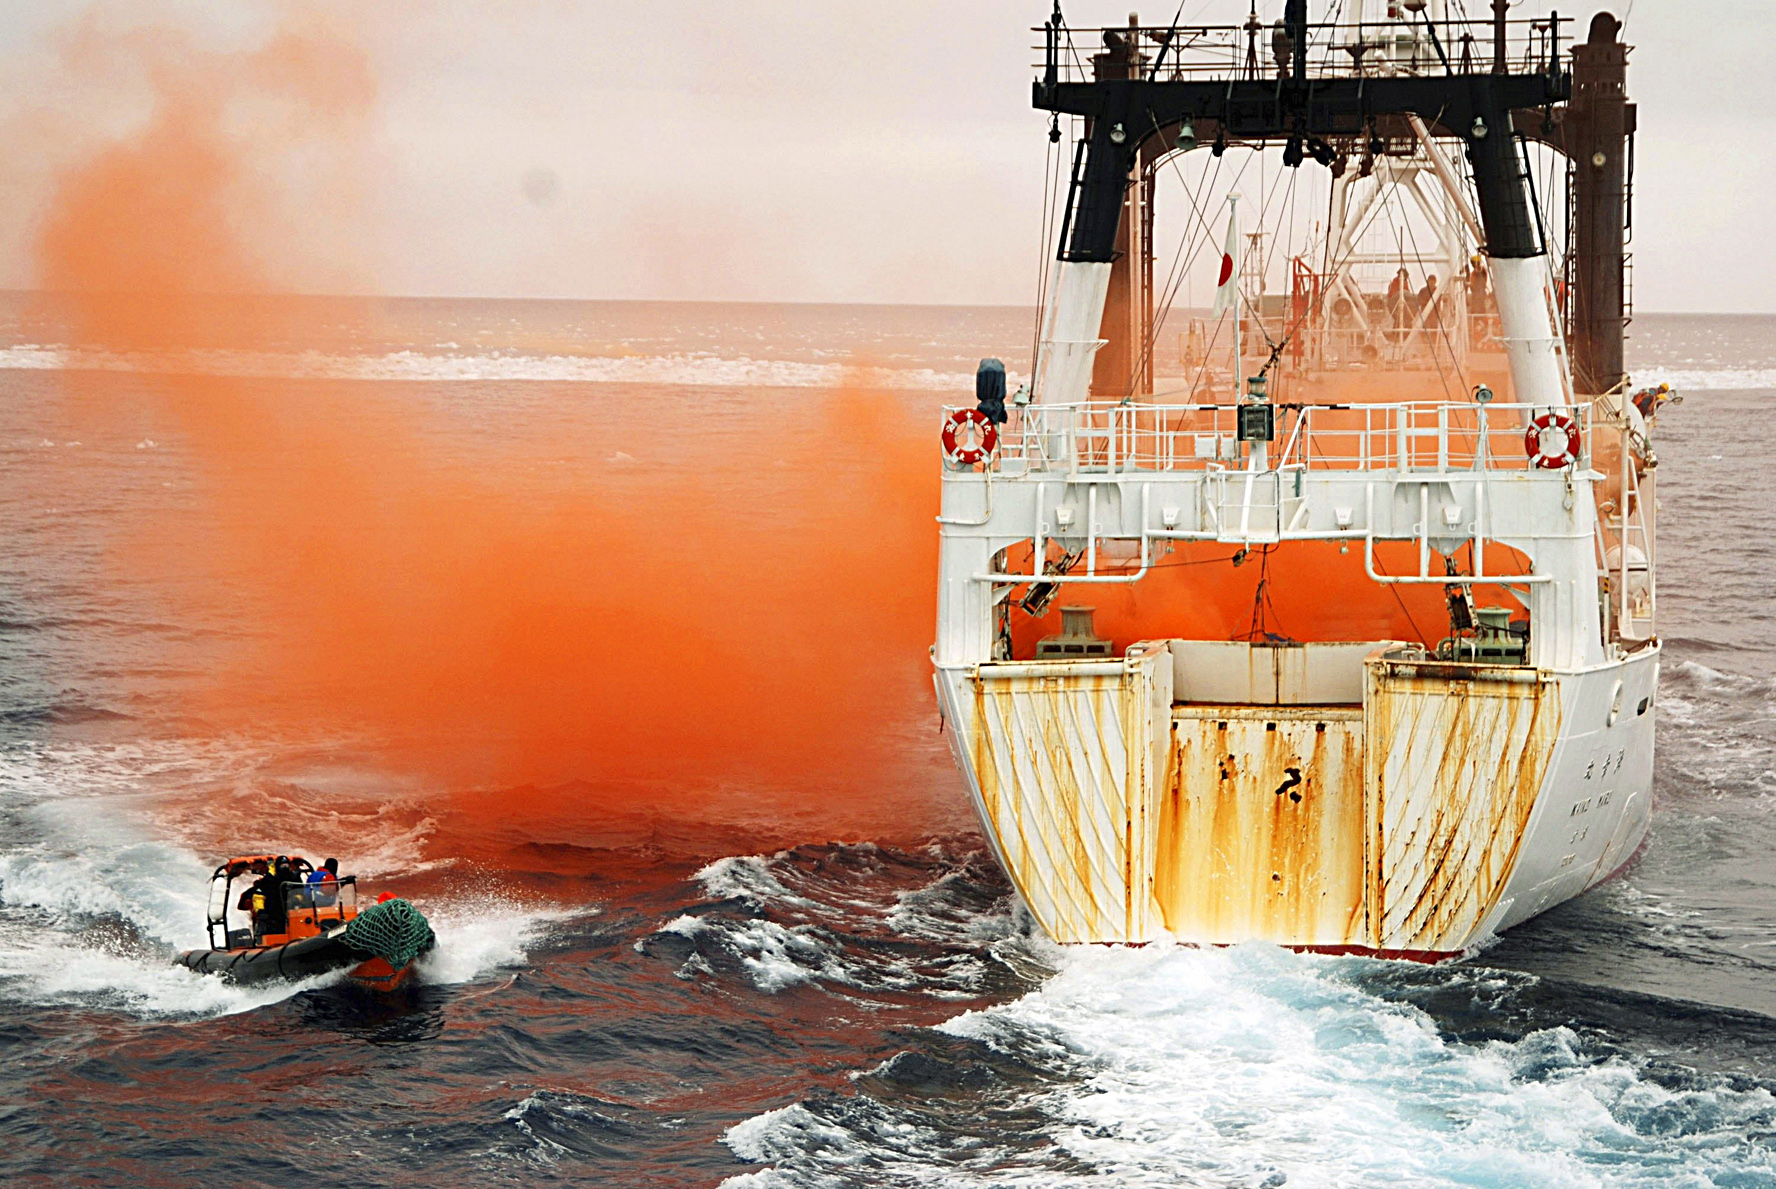 Kampf gegen japanische Walfänger aufgegeben: Sea Shepherd kann nicht mit „militärischer Technologie mithalten“